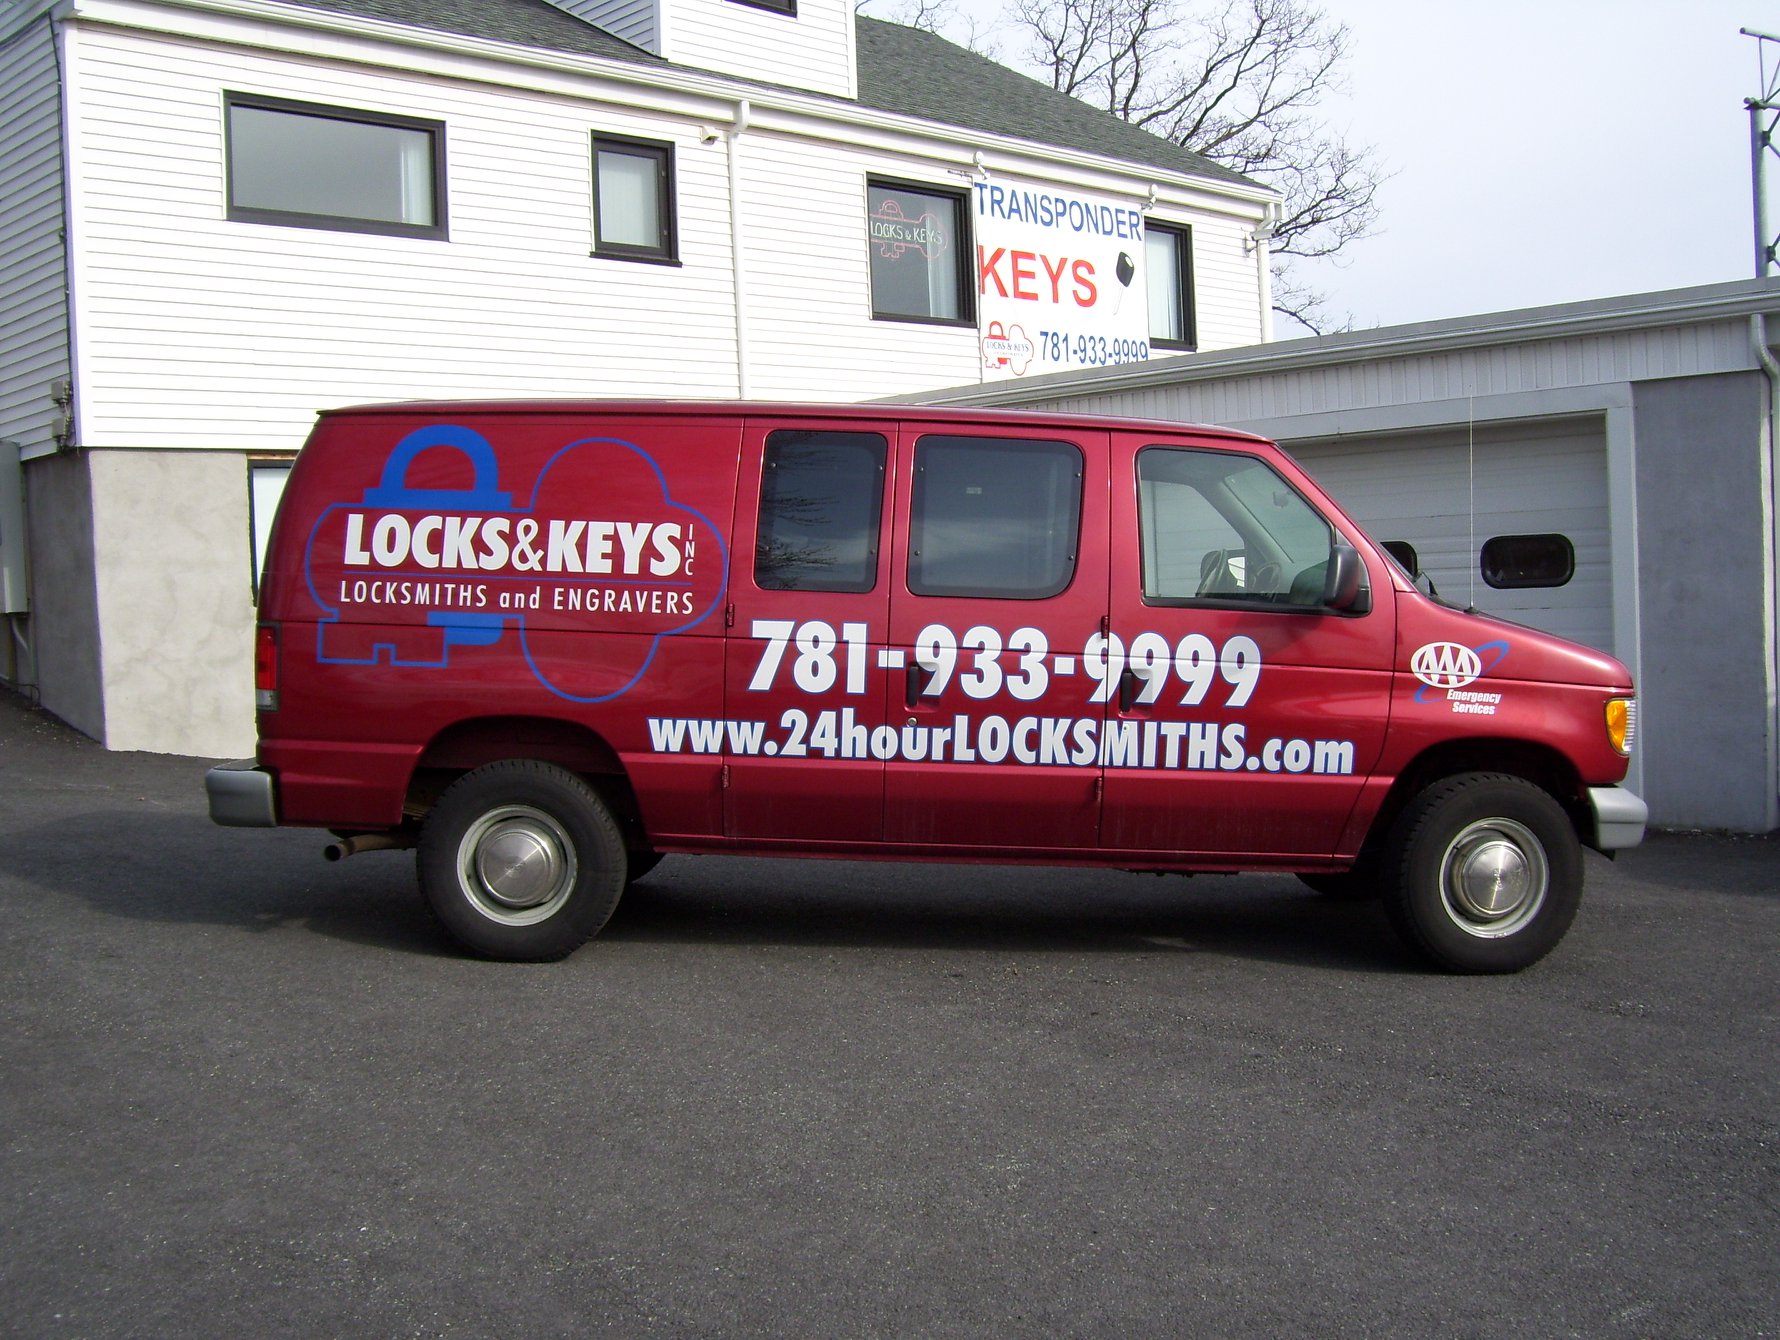 Locks & Keys Inc. - Emergency Services - Woburn MA locksmith